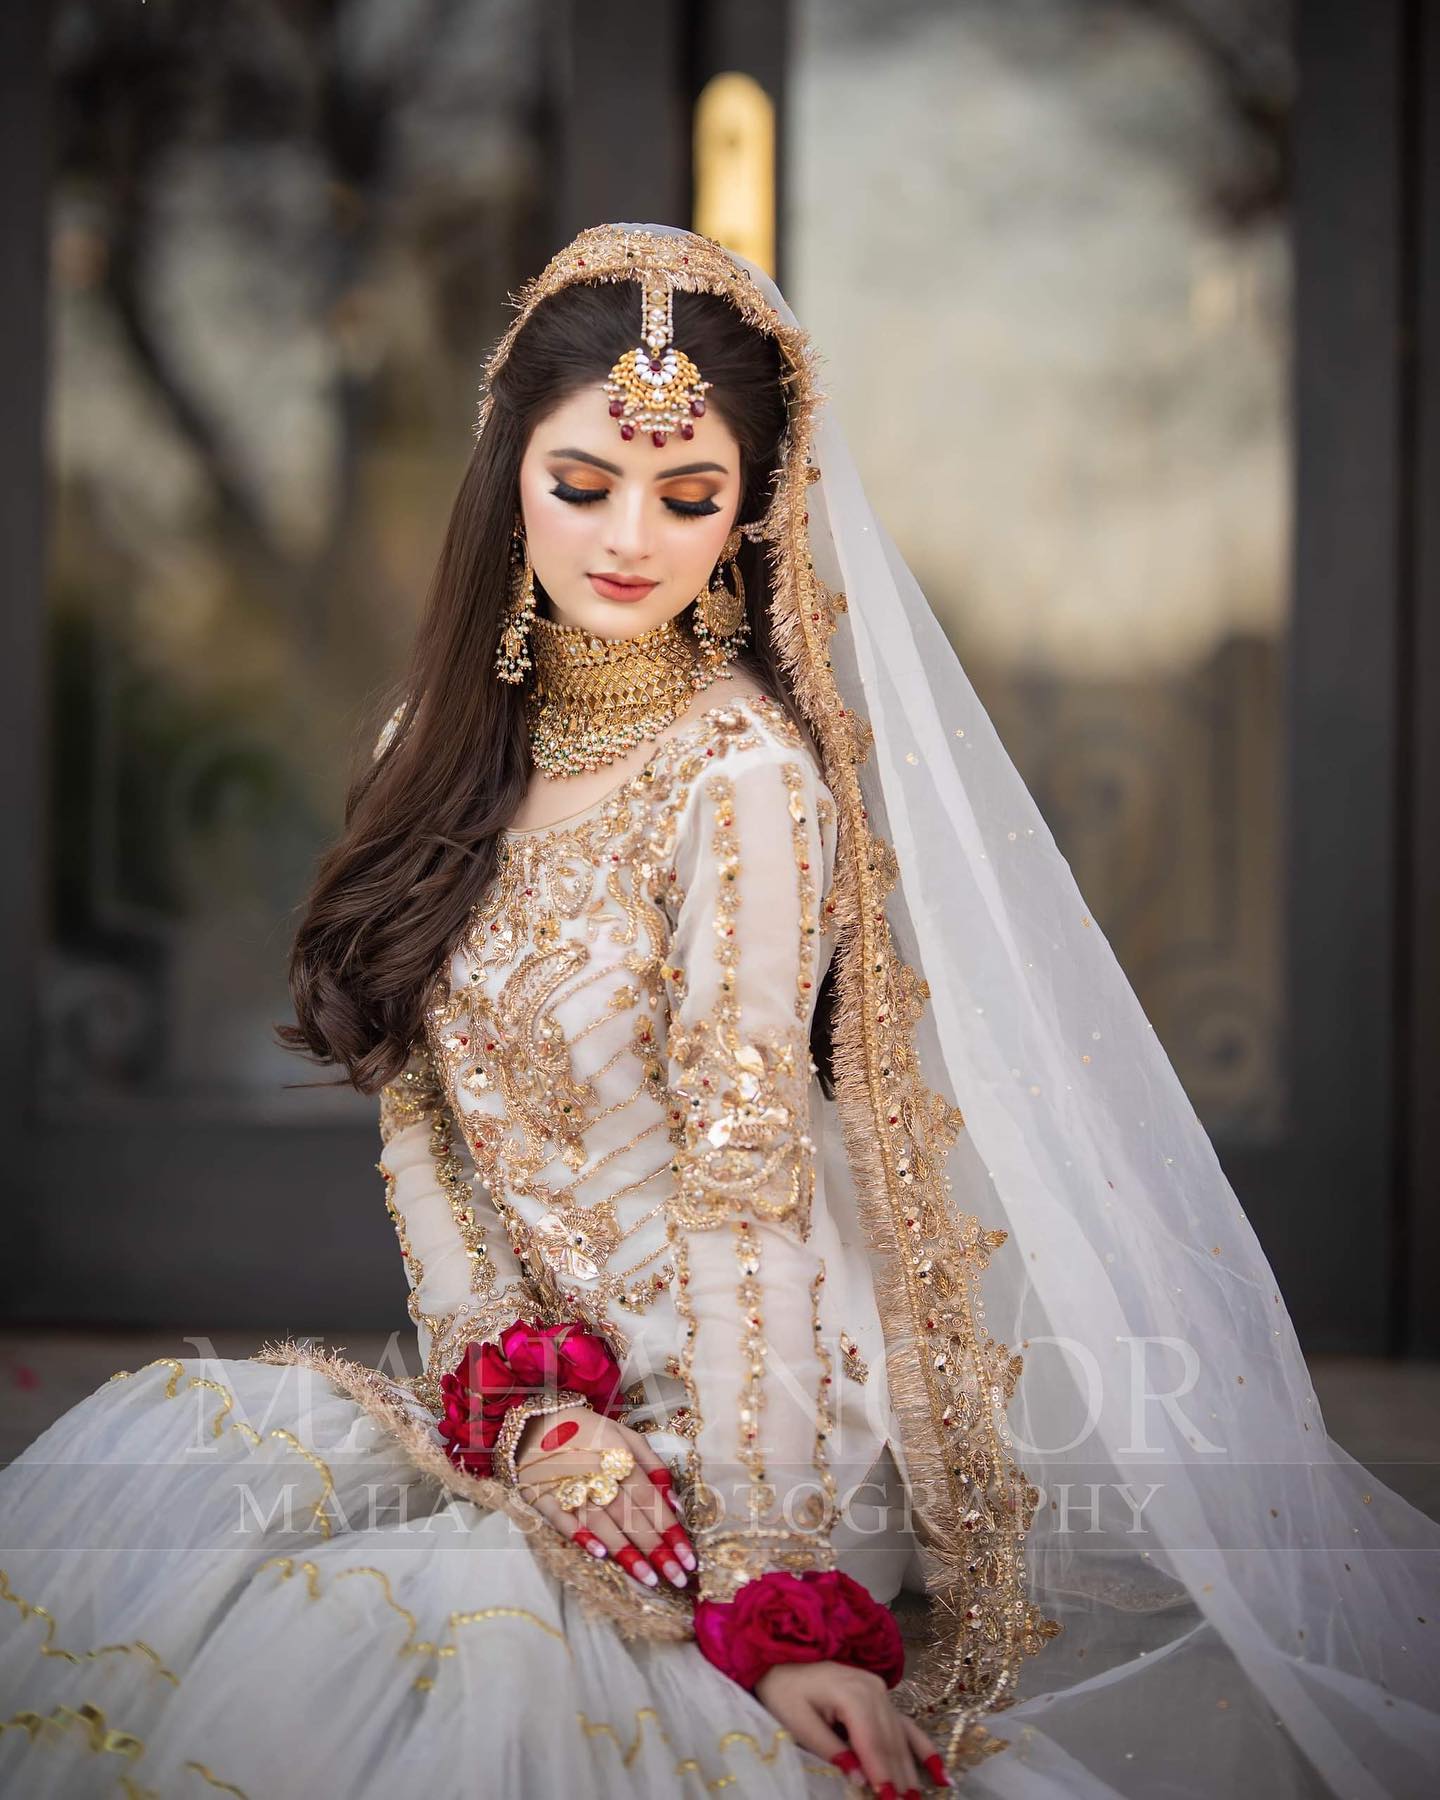 Epic Two-Day Pakistani Wedding Celebration | Dania & Nick –  marysheltonmedia.com